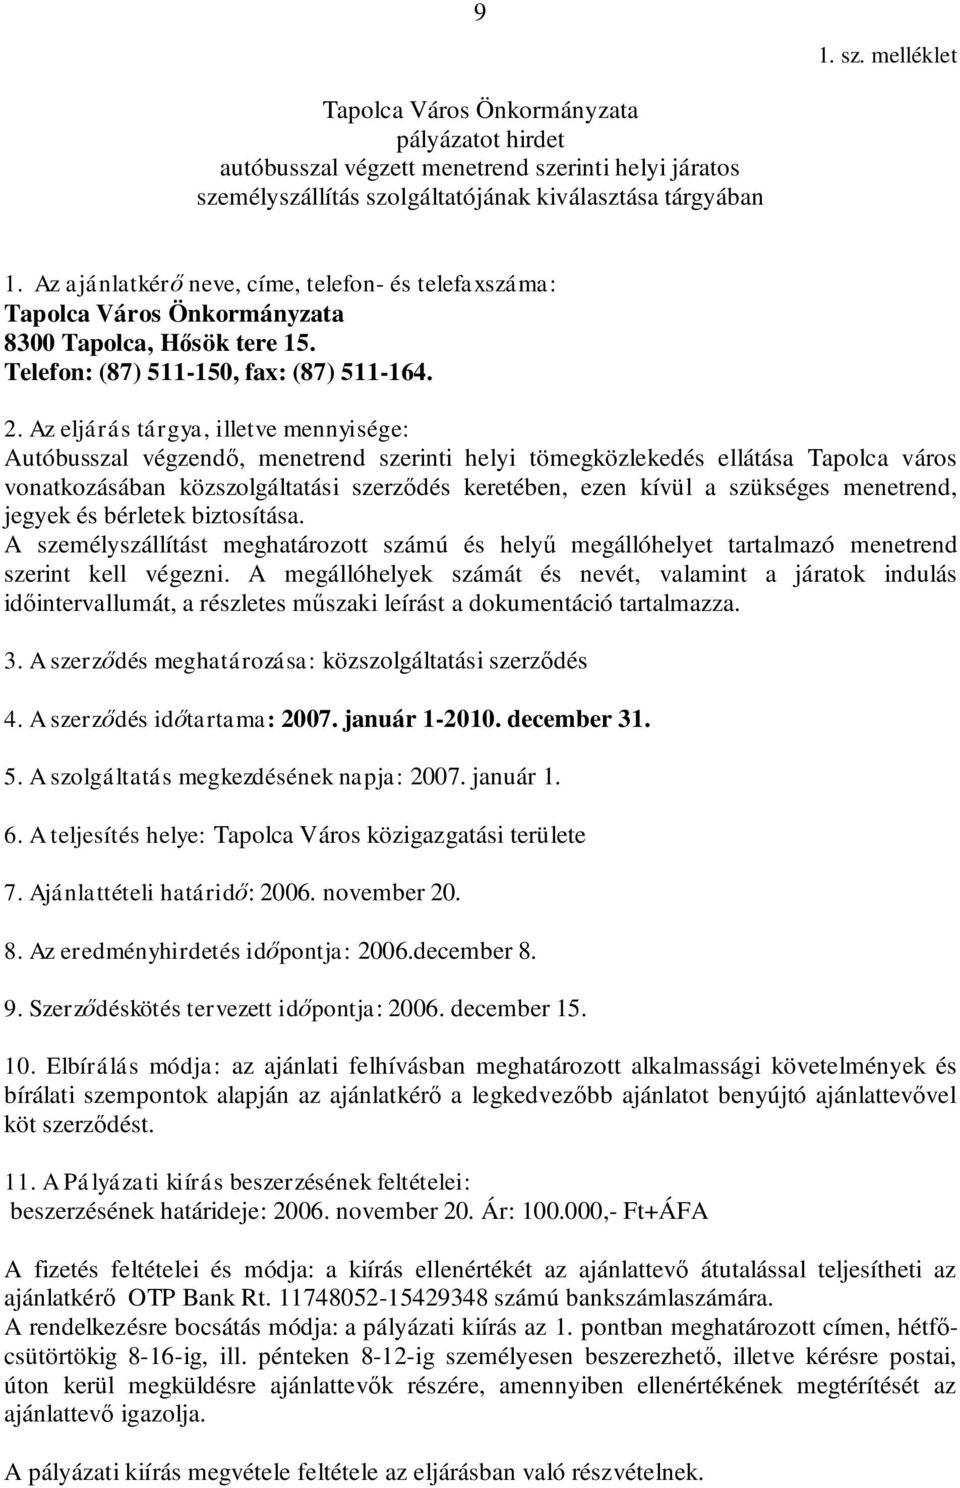 Az eljárás tárgya, illetve mennyisége: Autóbusszal végzendő, menetrend szerinti helyi tömegközlekedés ellátása Tapolca város vonatkozásában közszolgáltatási szerződés keretében, ezen kívül a